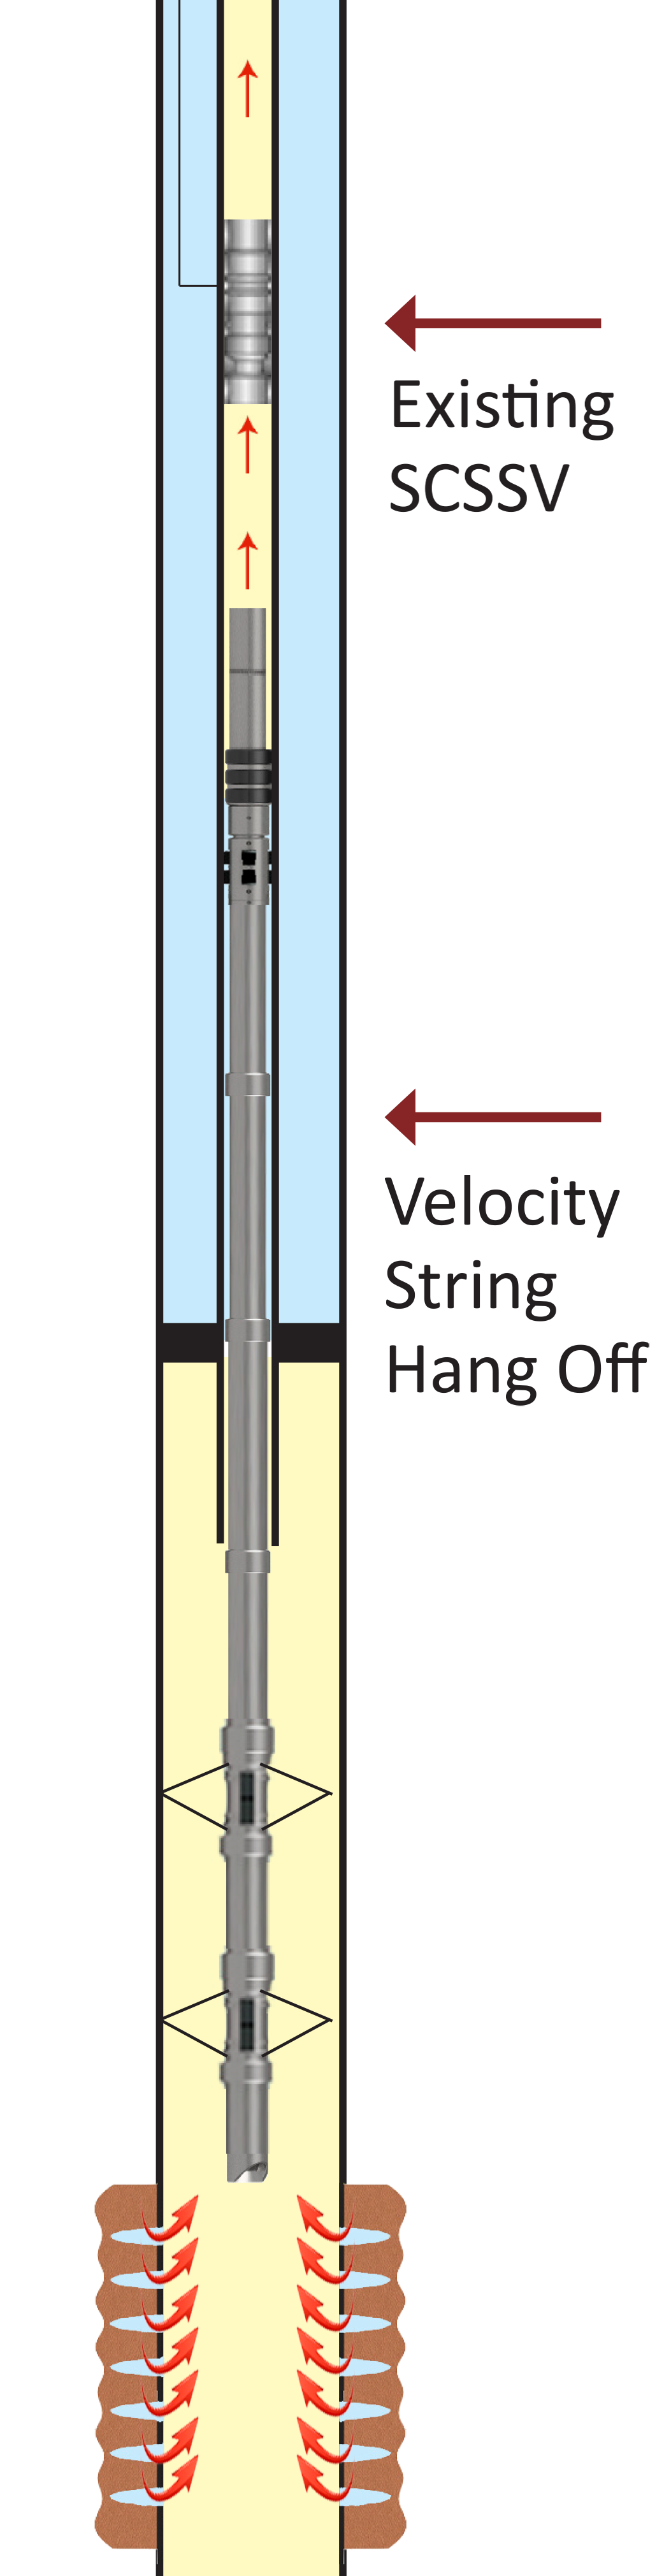 TTS Velocity String Assemblies